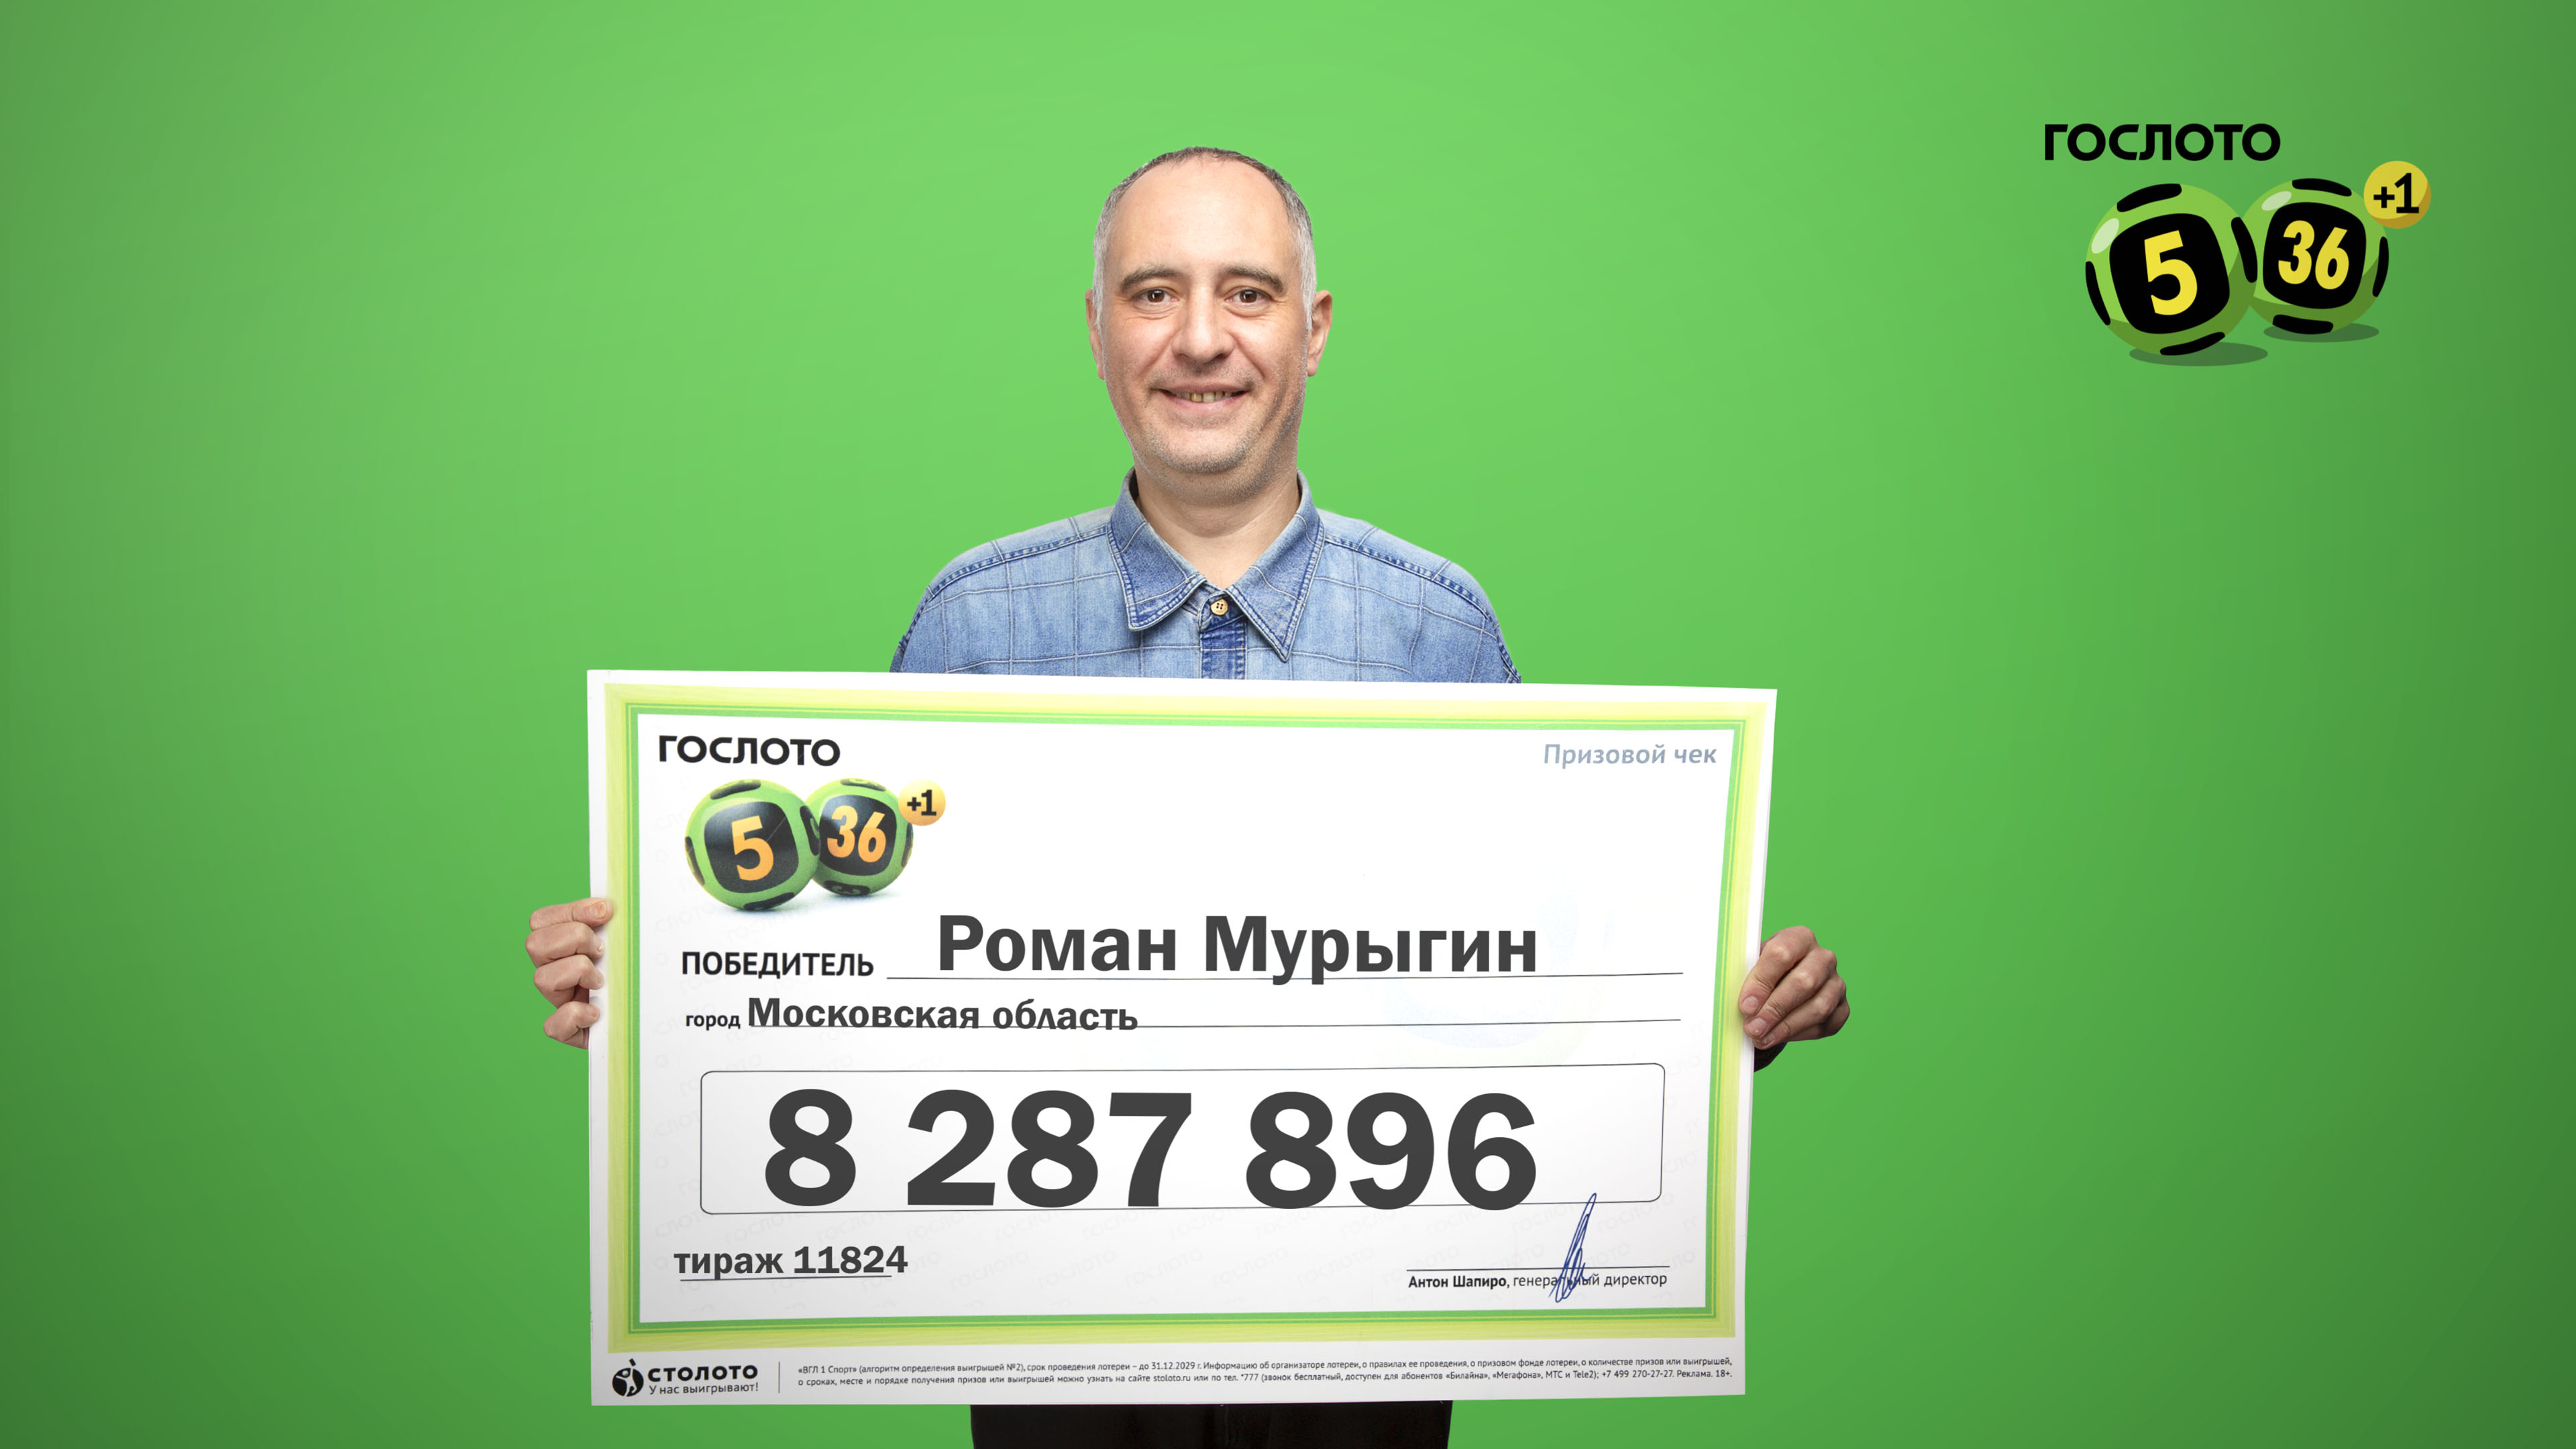 Брянск победители столото покердом скачать pokerdom website